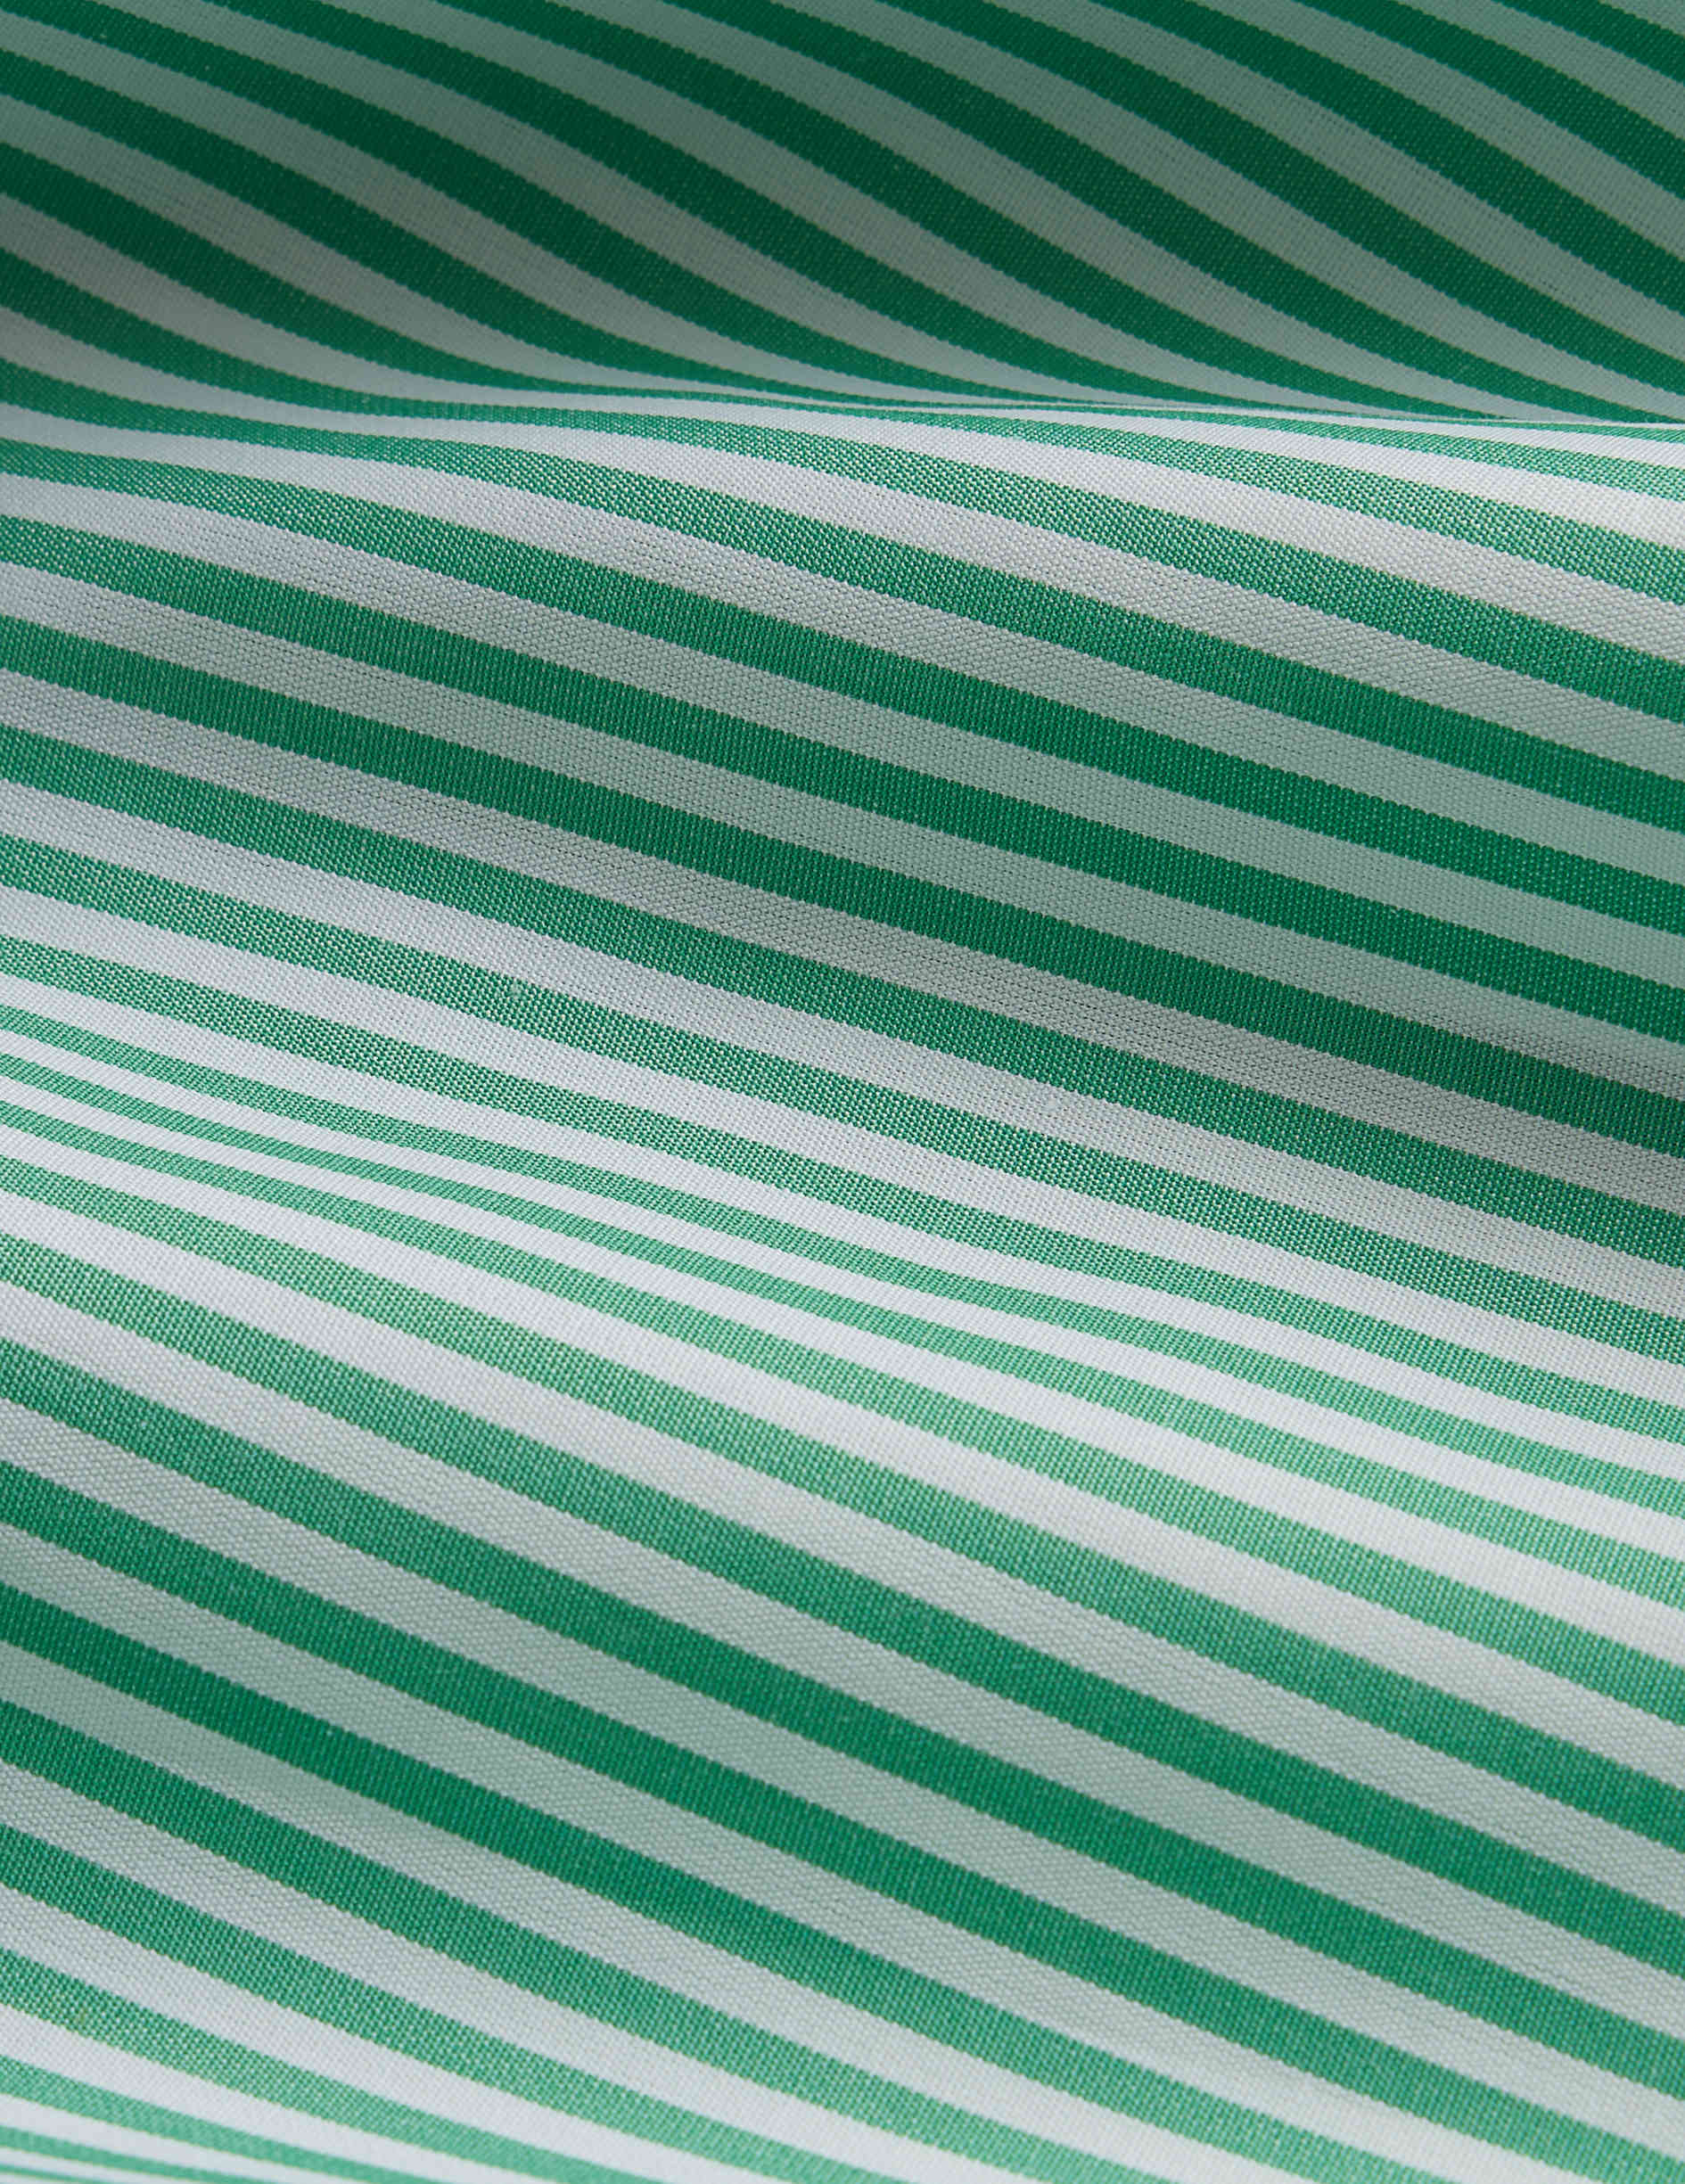 Semi-fitted green striped shirt - Poplin - Italian Collar